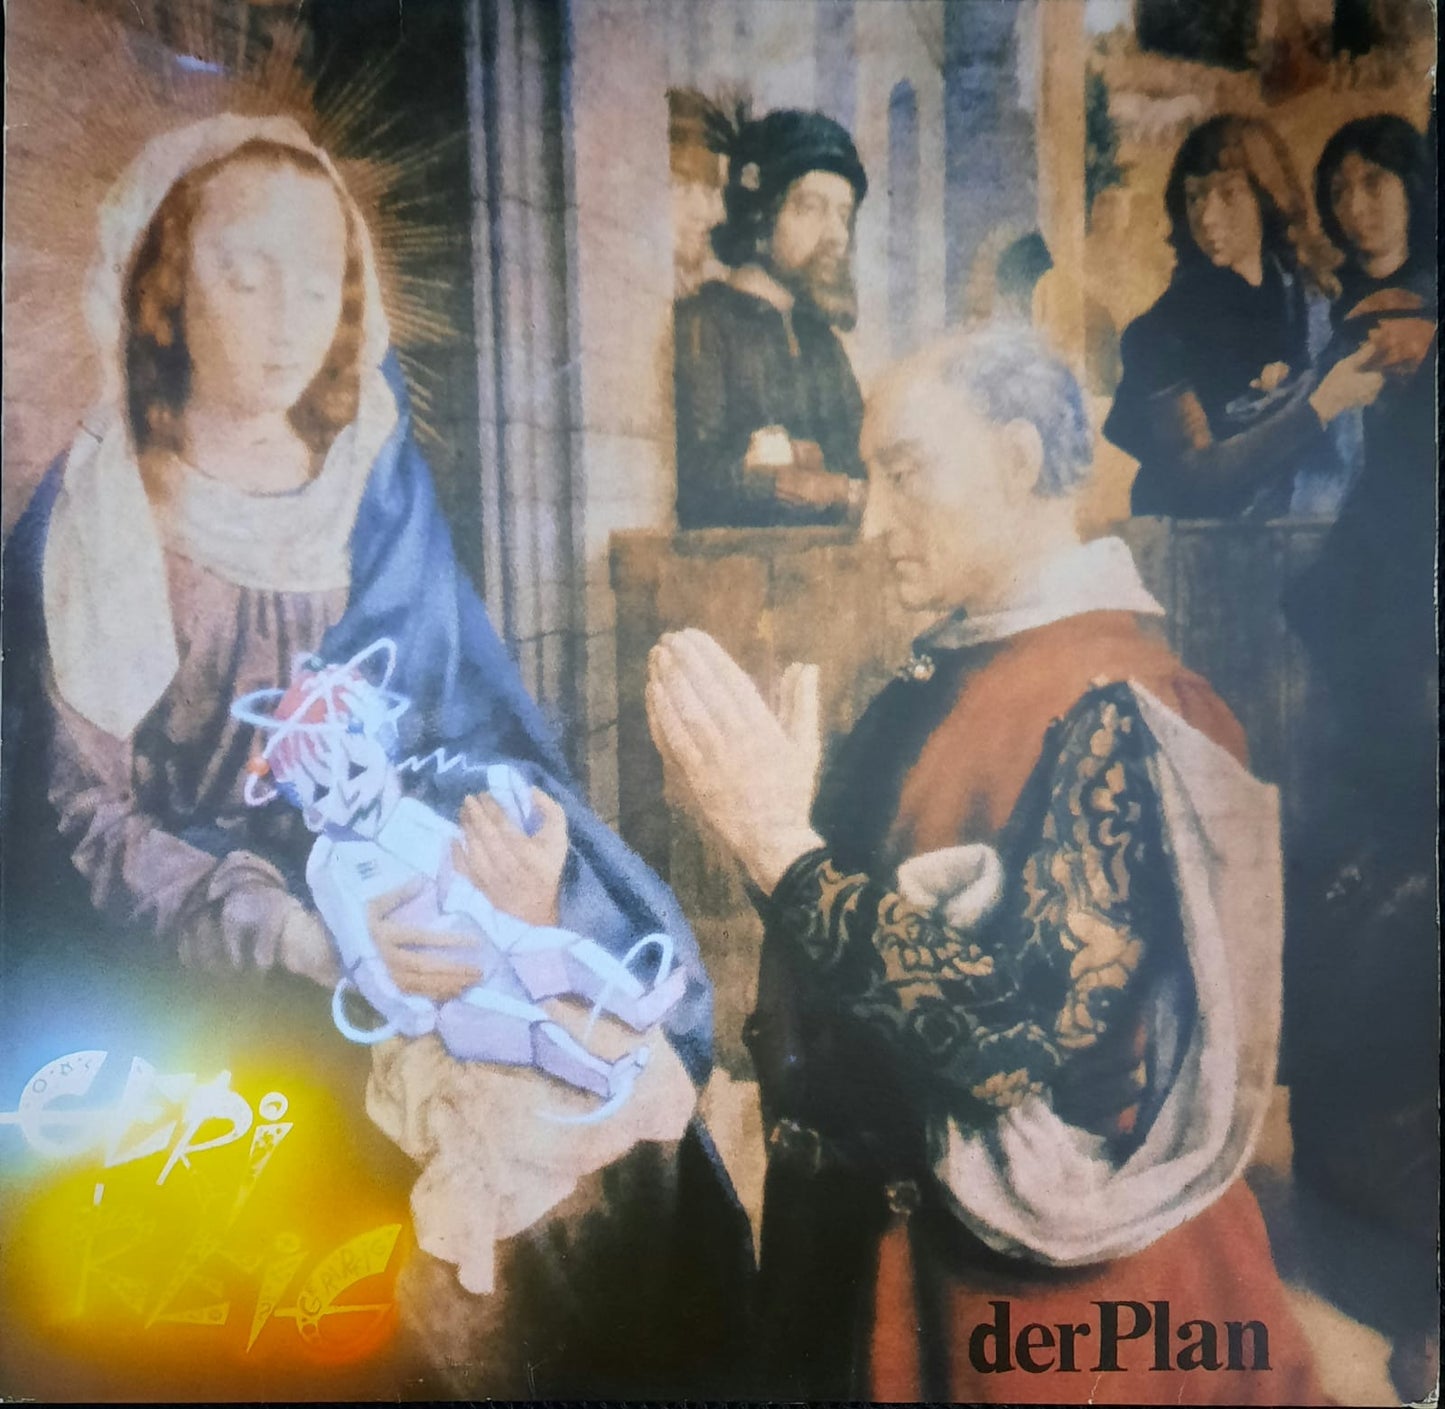 Der Plan – Geri Reig (LP, Alemania, 1980)